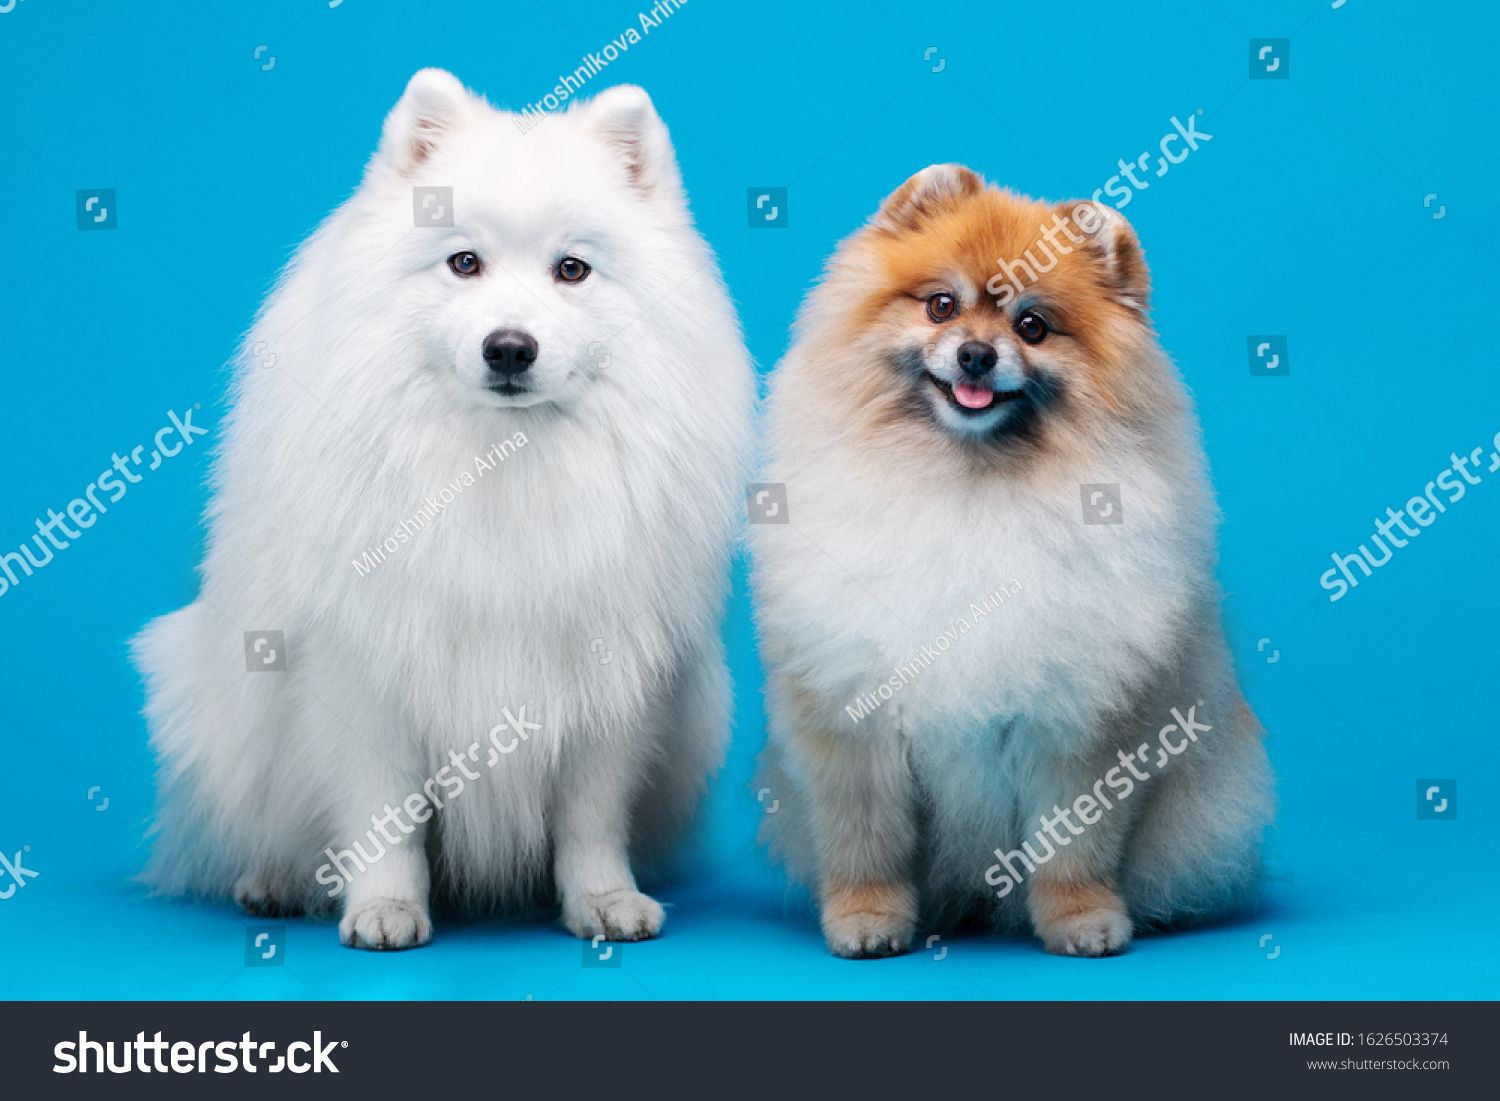 Japanese Spitz Pomeranian Spitz Dog Posing Animals Wildlife Stock Image 1626503374